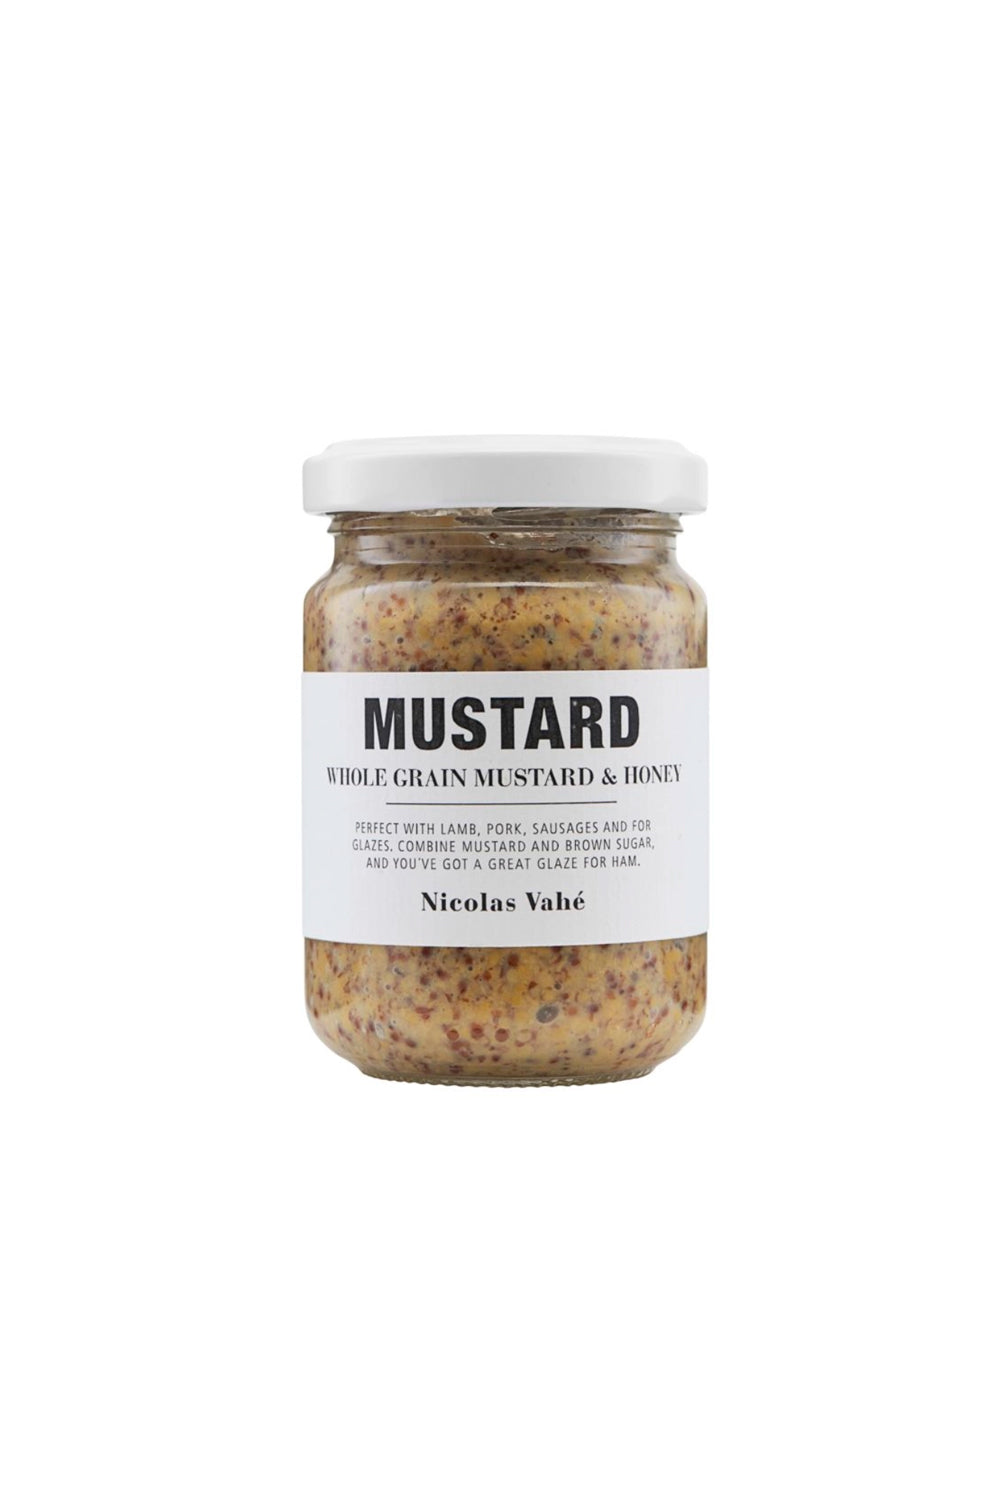 Gourmet Mustard